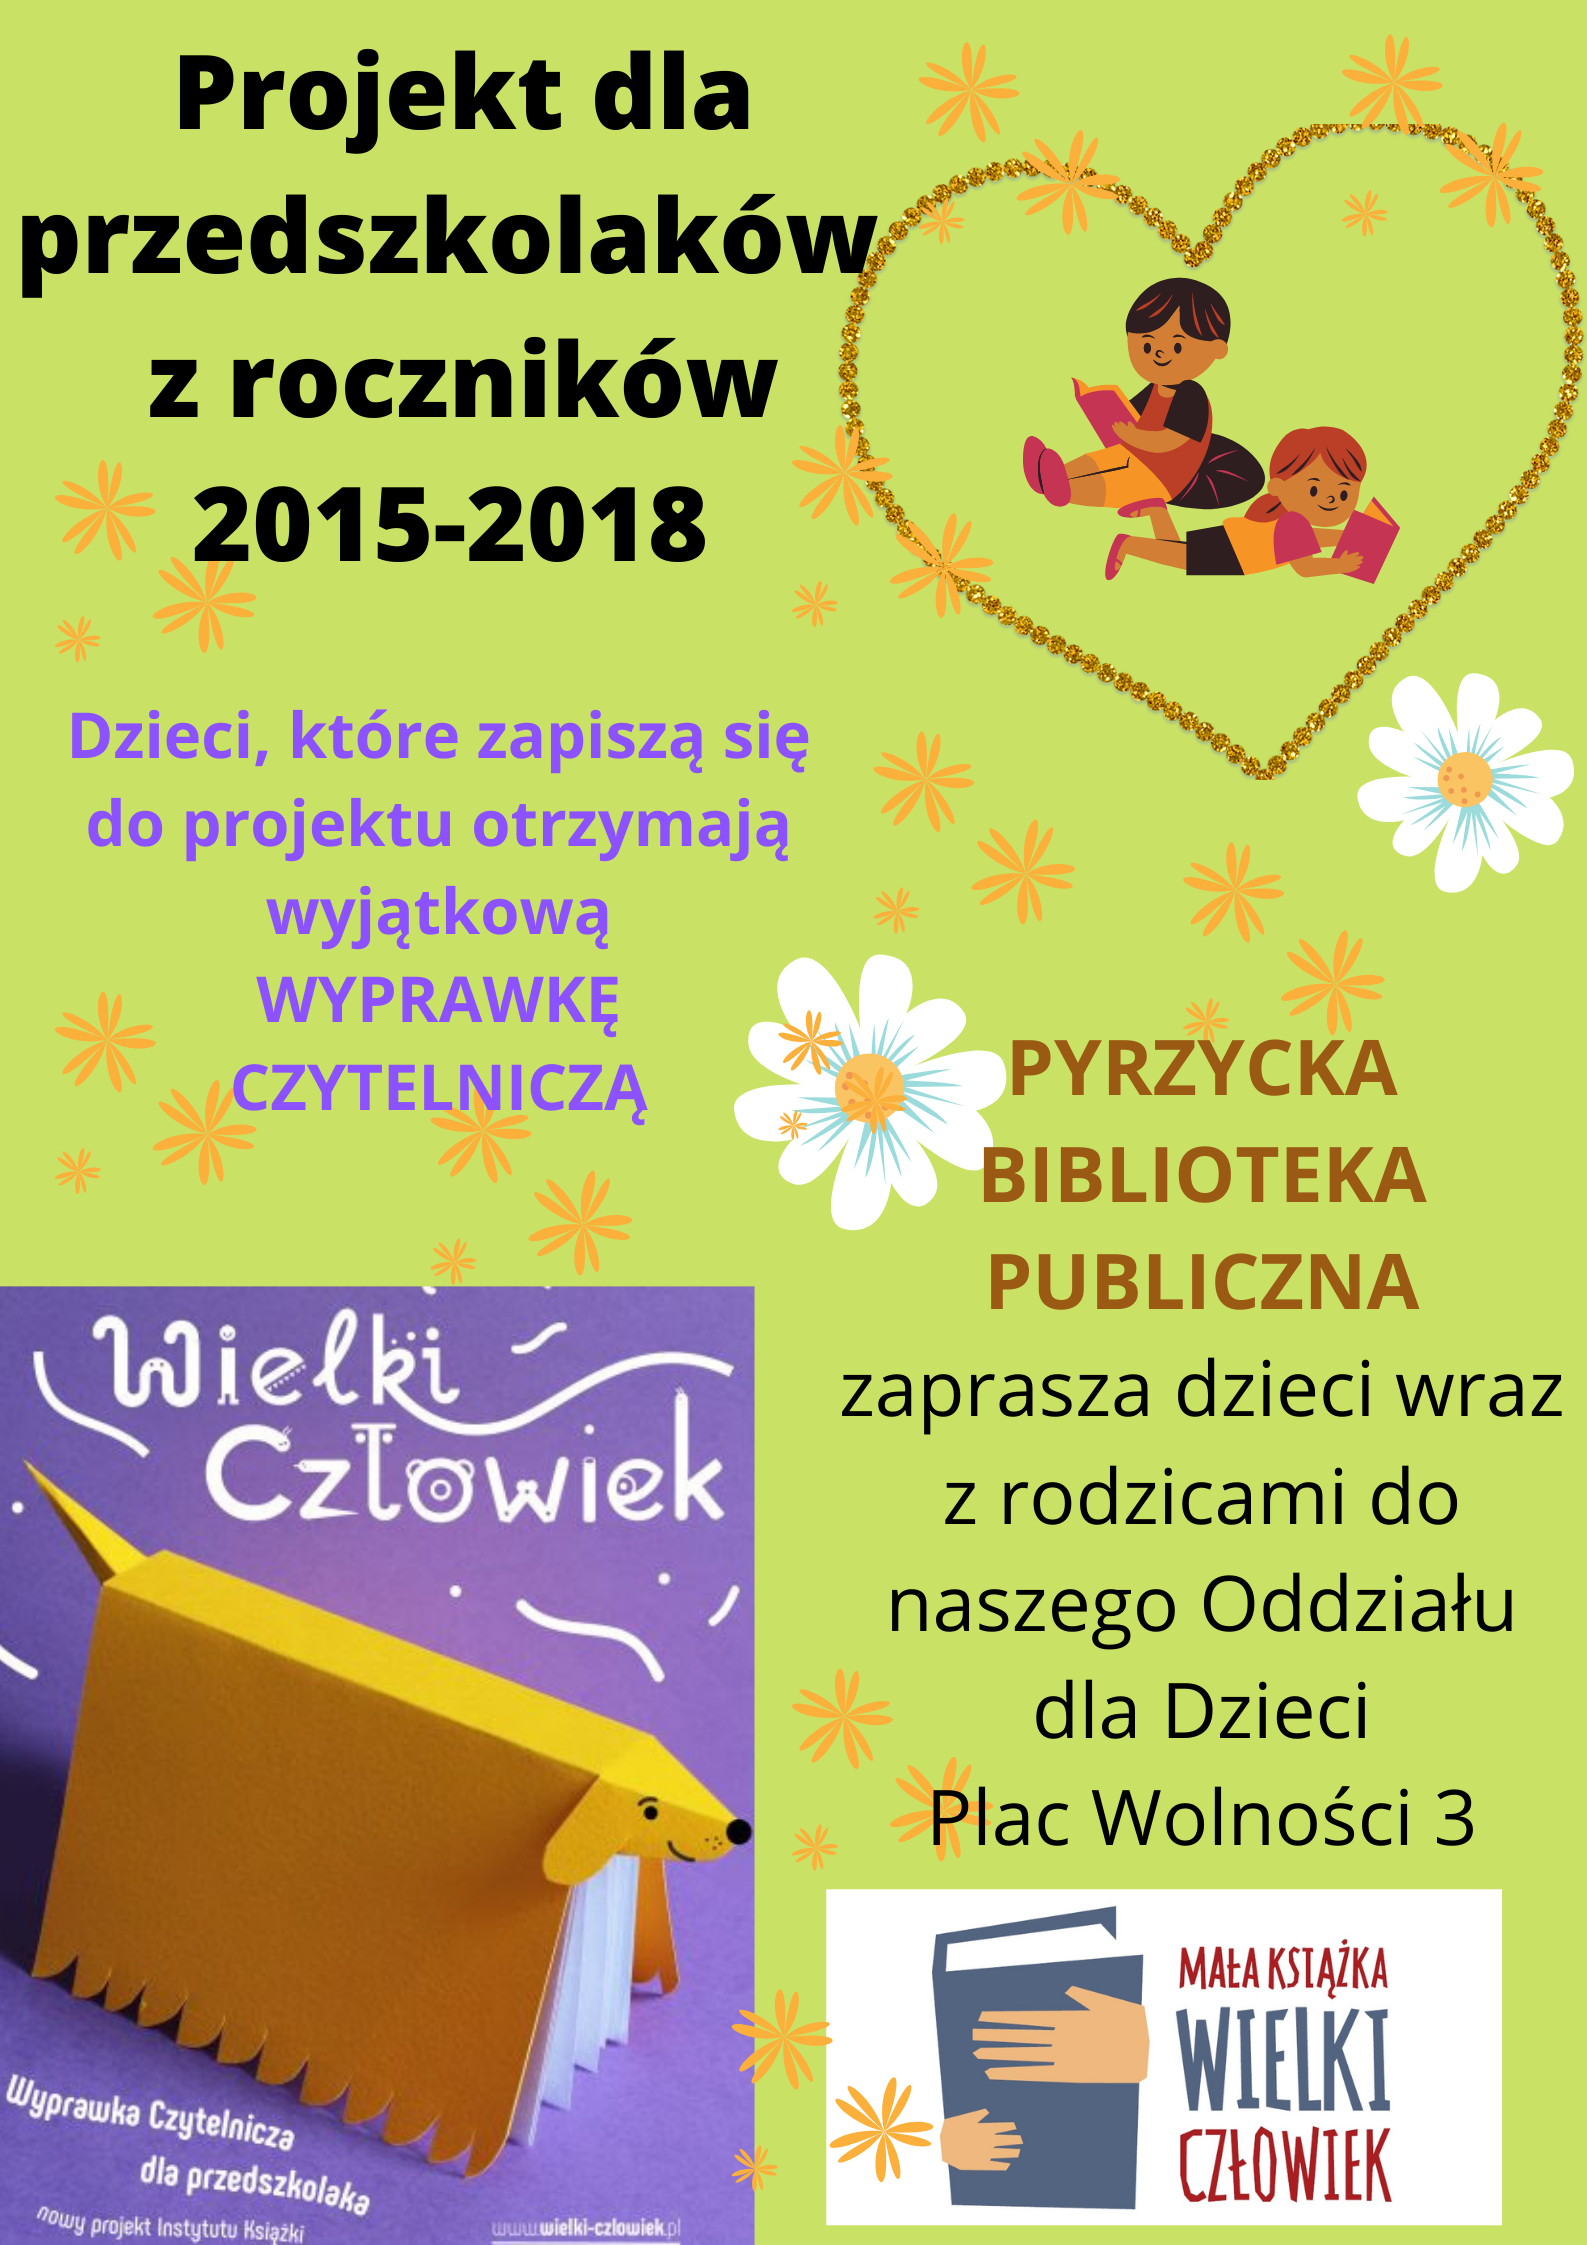 Projekt dla Przedzkolaków z czników 2015 - 2018 wow!